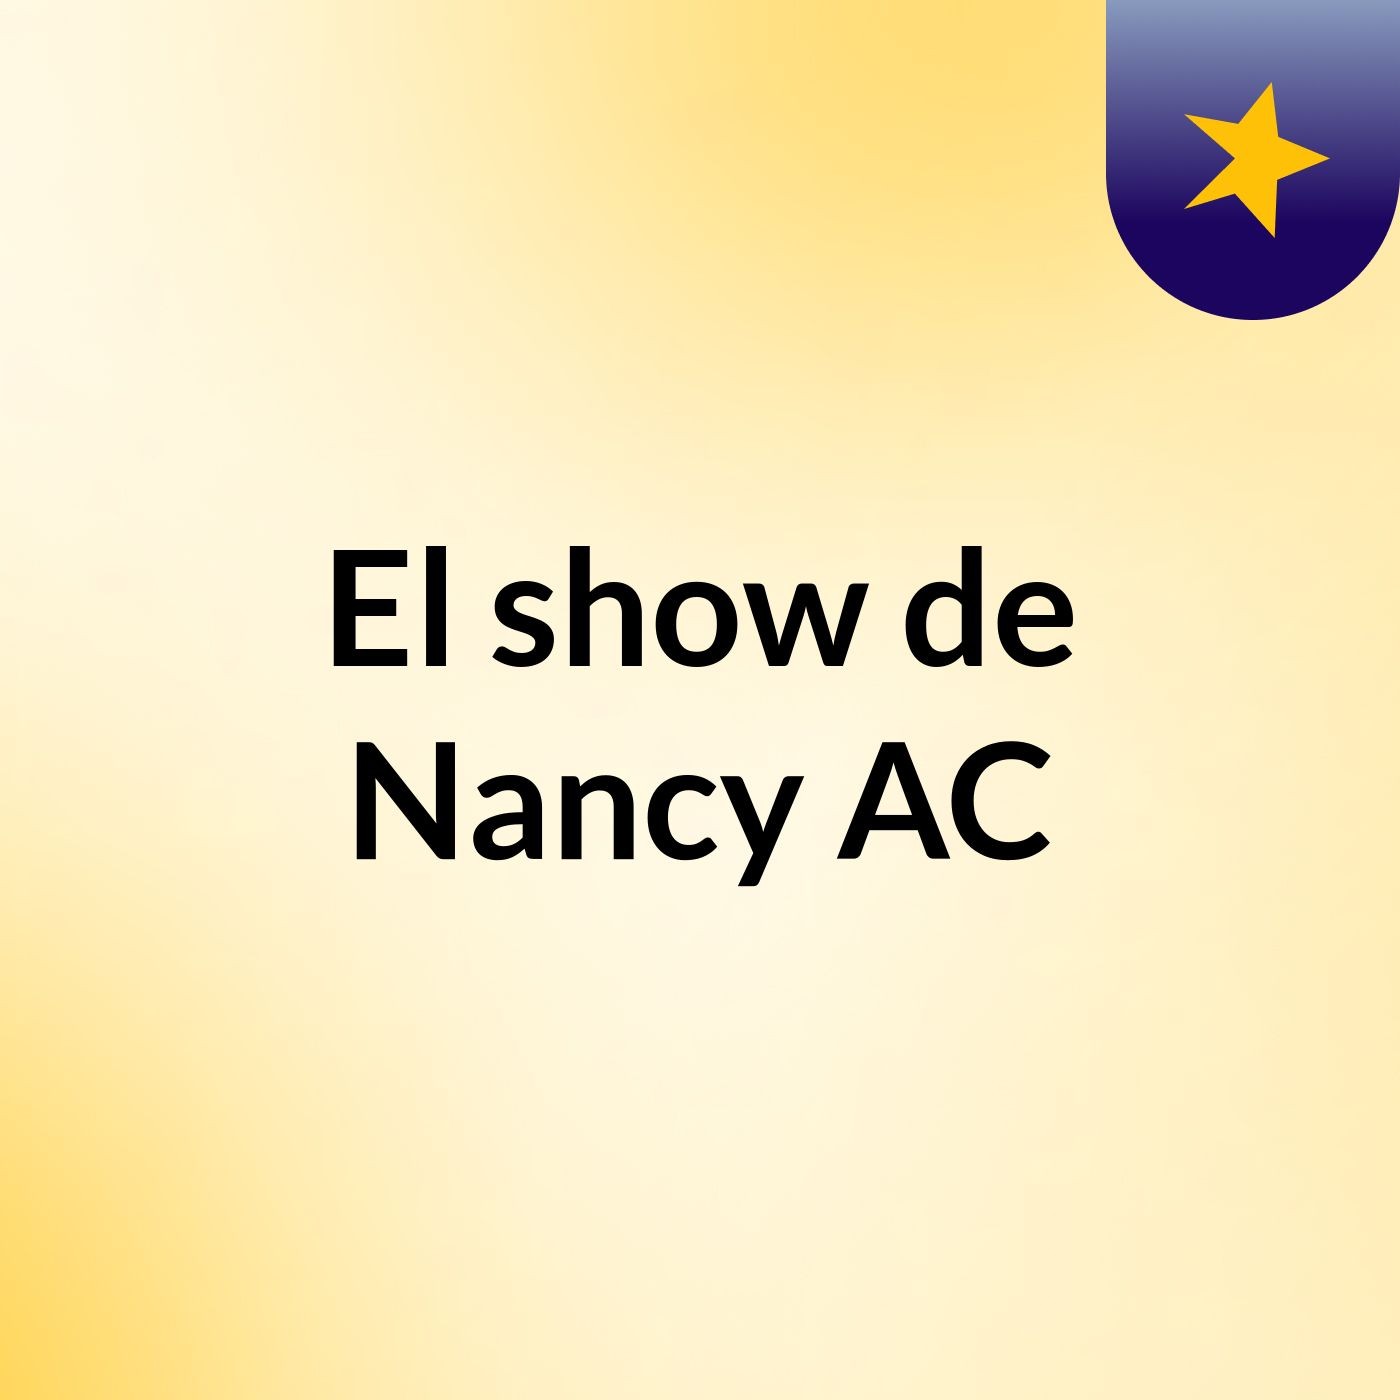 El show de Nancy AC